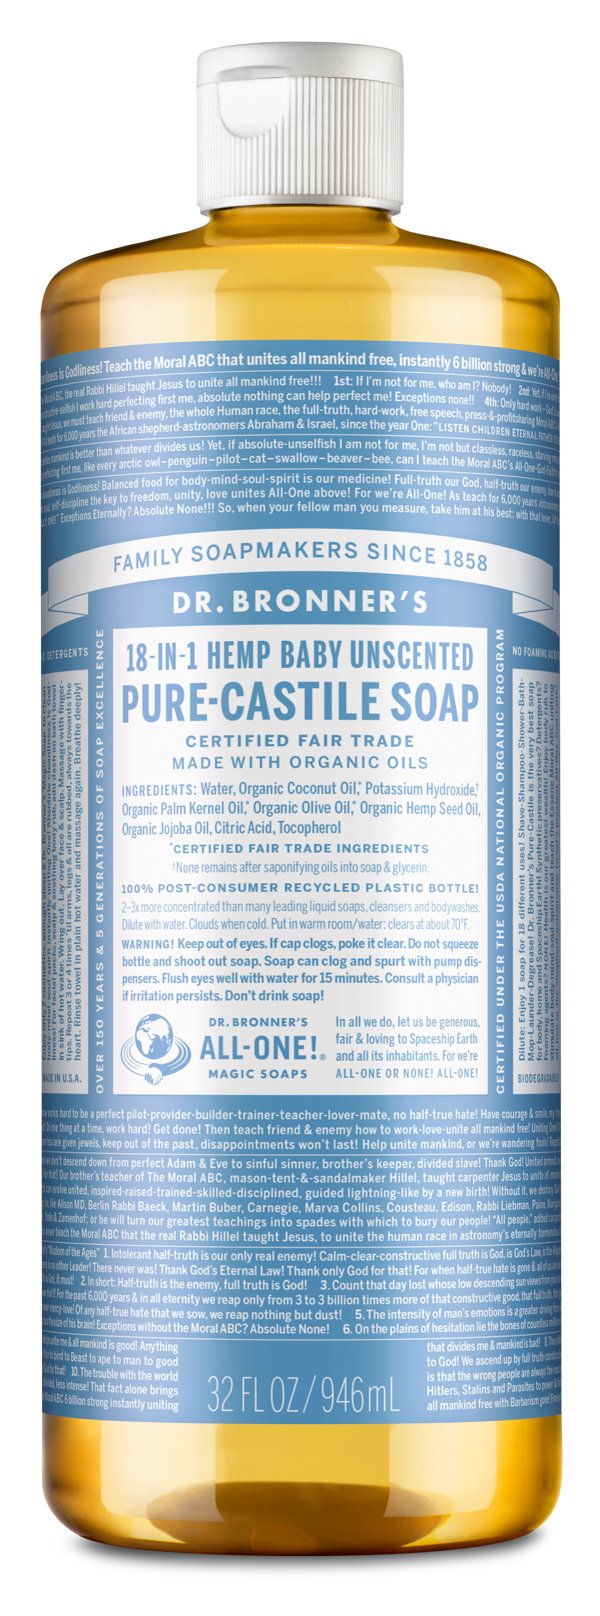 'Dr. Bronner's' Castile Soap Refill